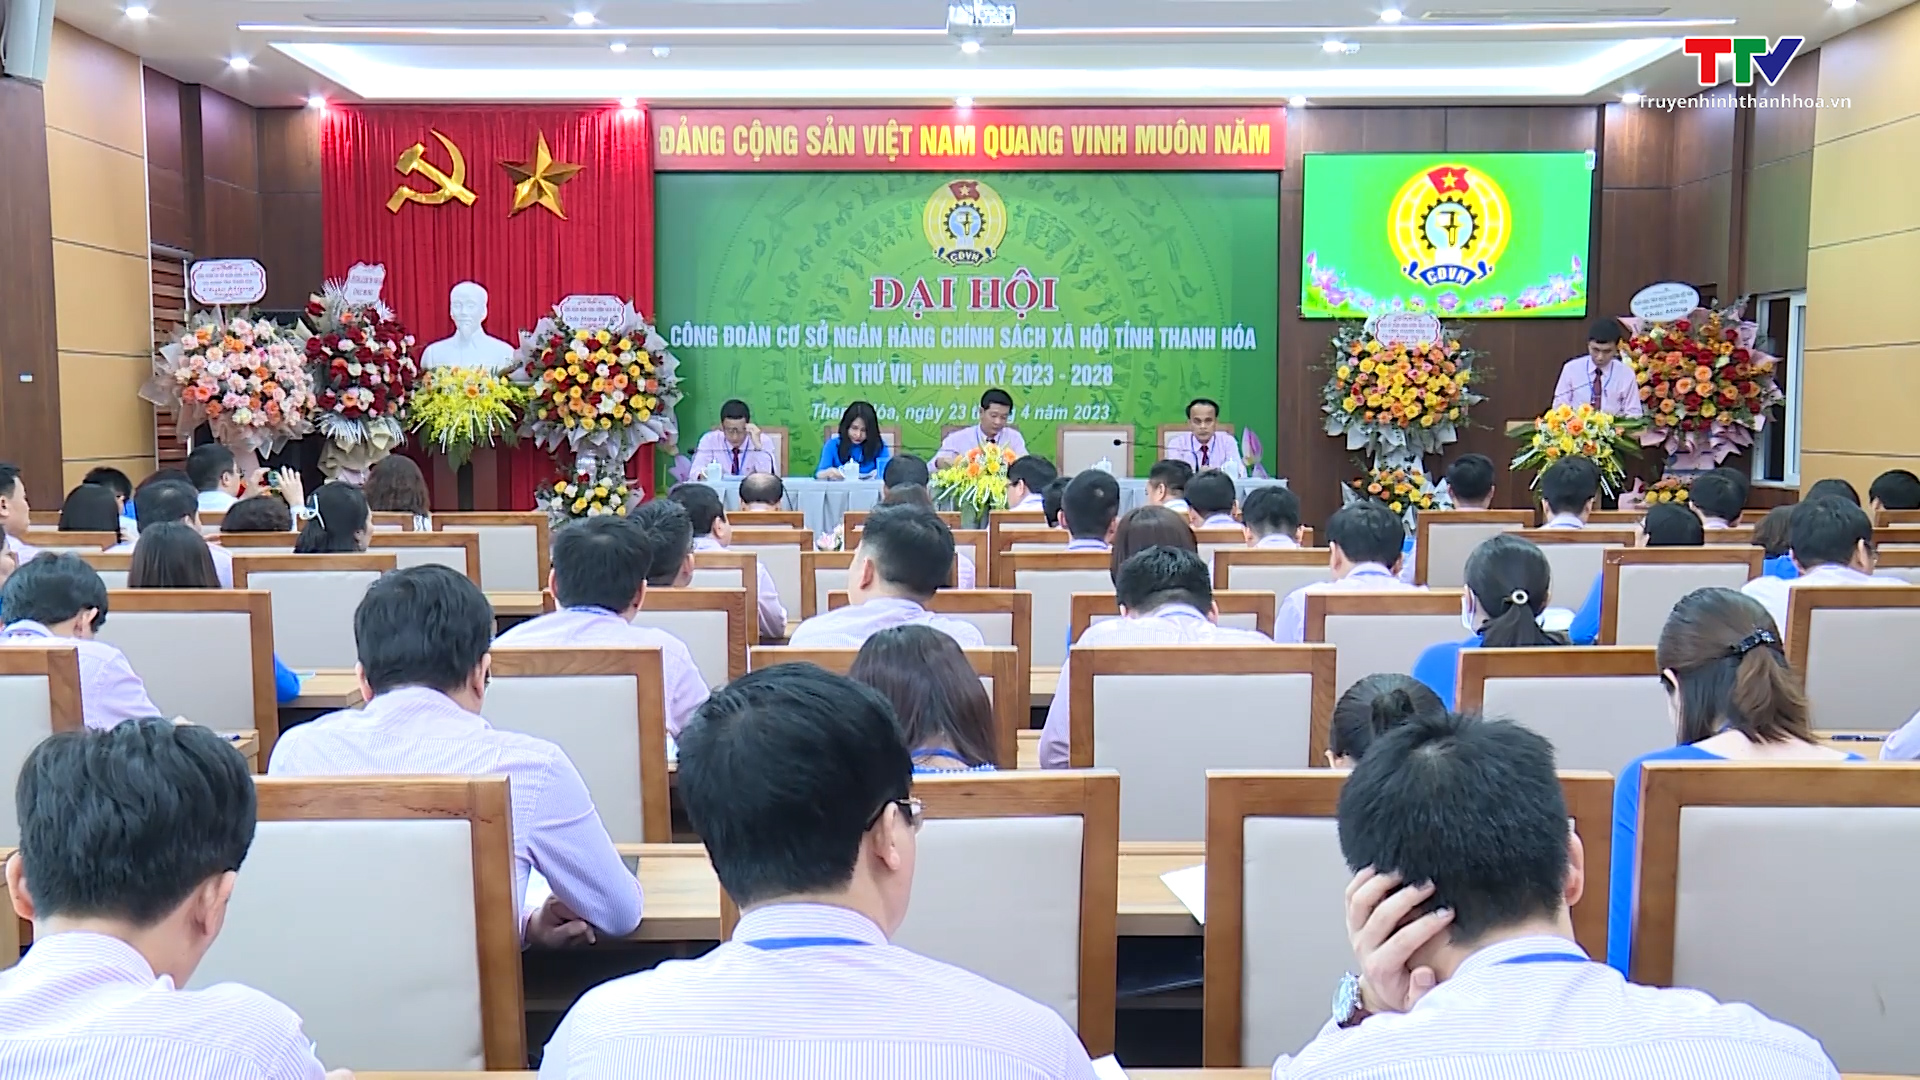 Đại hội Công đoàn cơ sở Ngân hàng chính sách xã hội tỉnh Thanh Hoá nhiệm kỳ 2023 – 2028 - Ảnh 2.